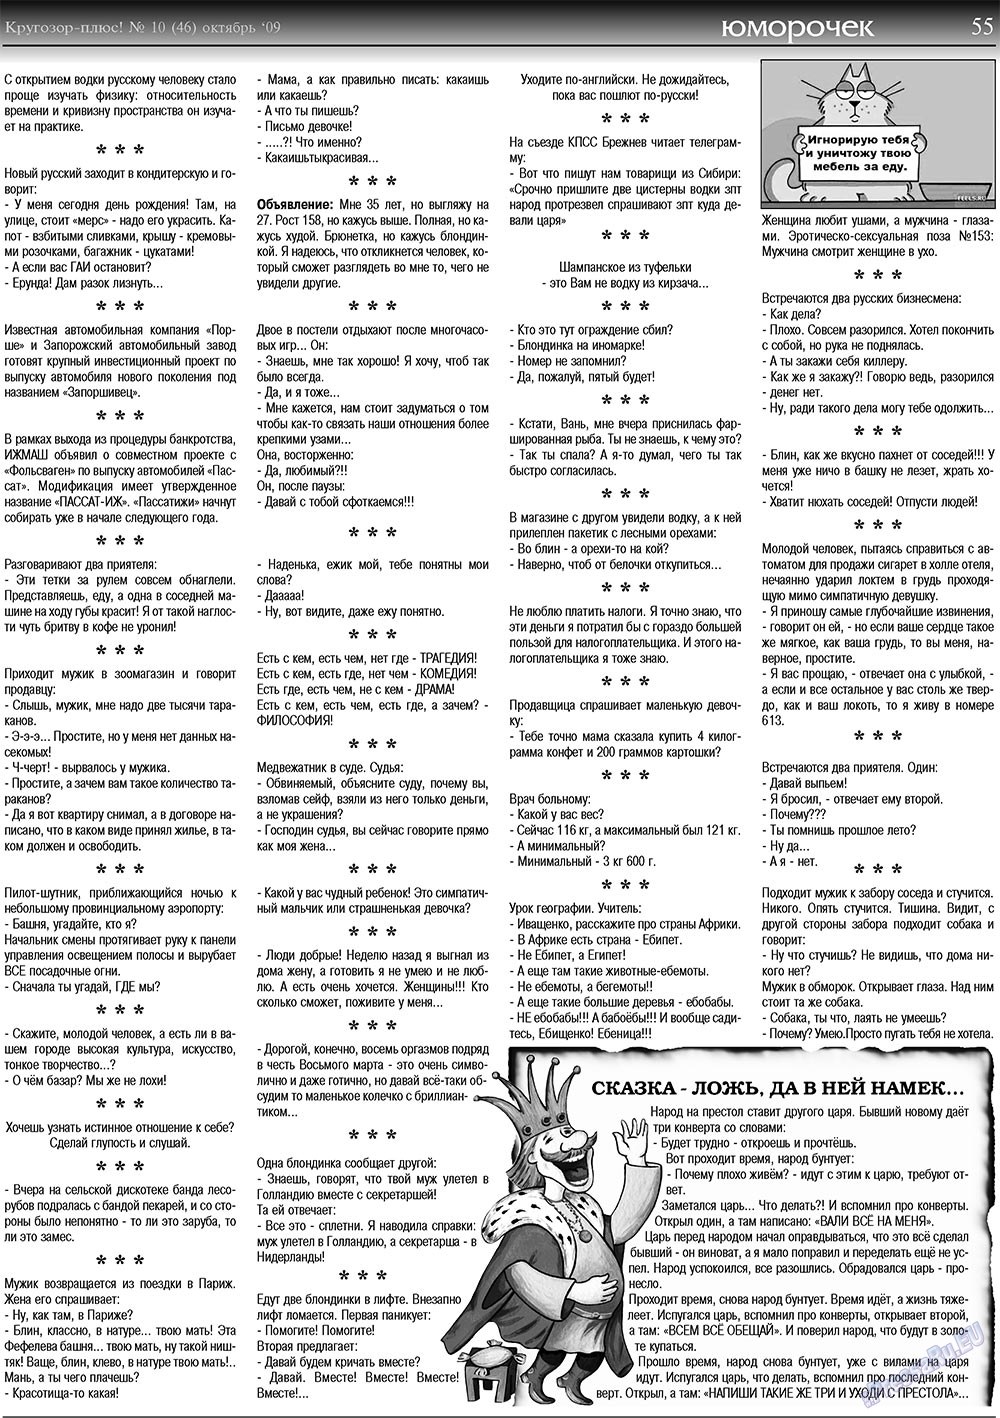 Кругозор плюс!, газета. 2009 №10 стр.55